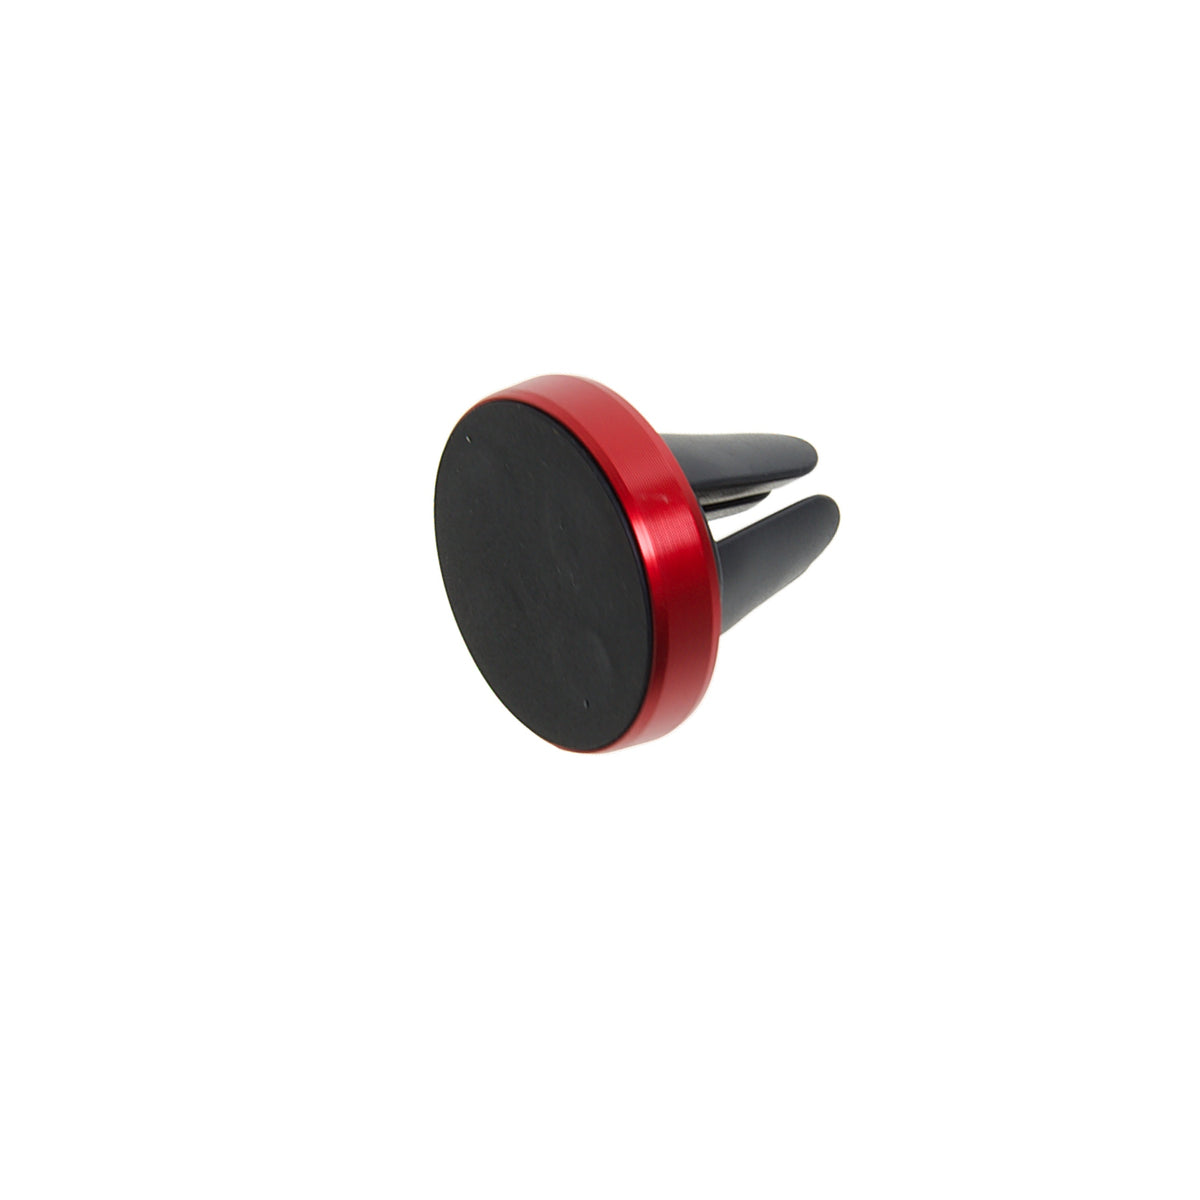 Gadget generico holder magneticopara sujetar celular y usarlo en el carro gadget color rojo